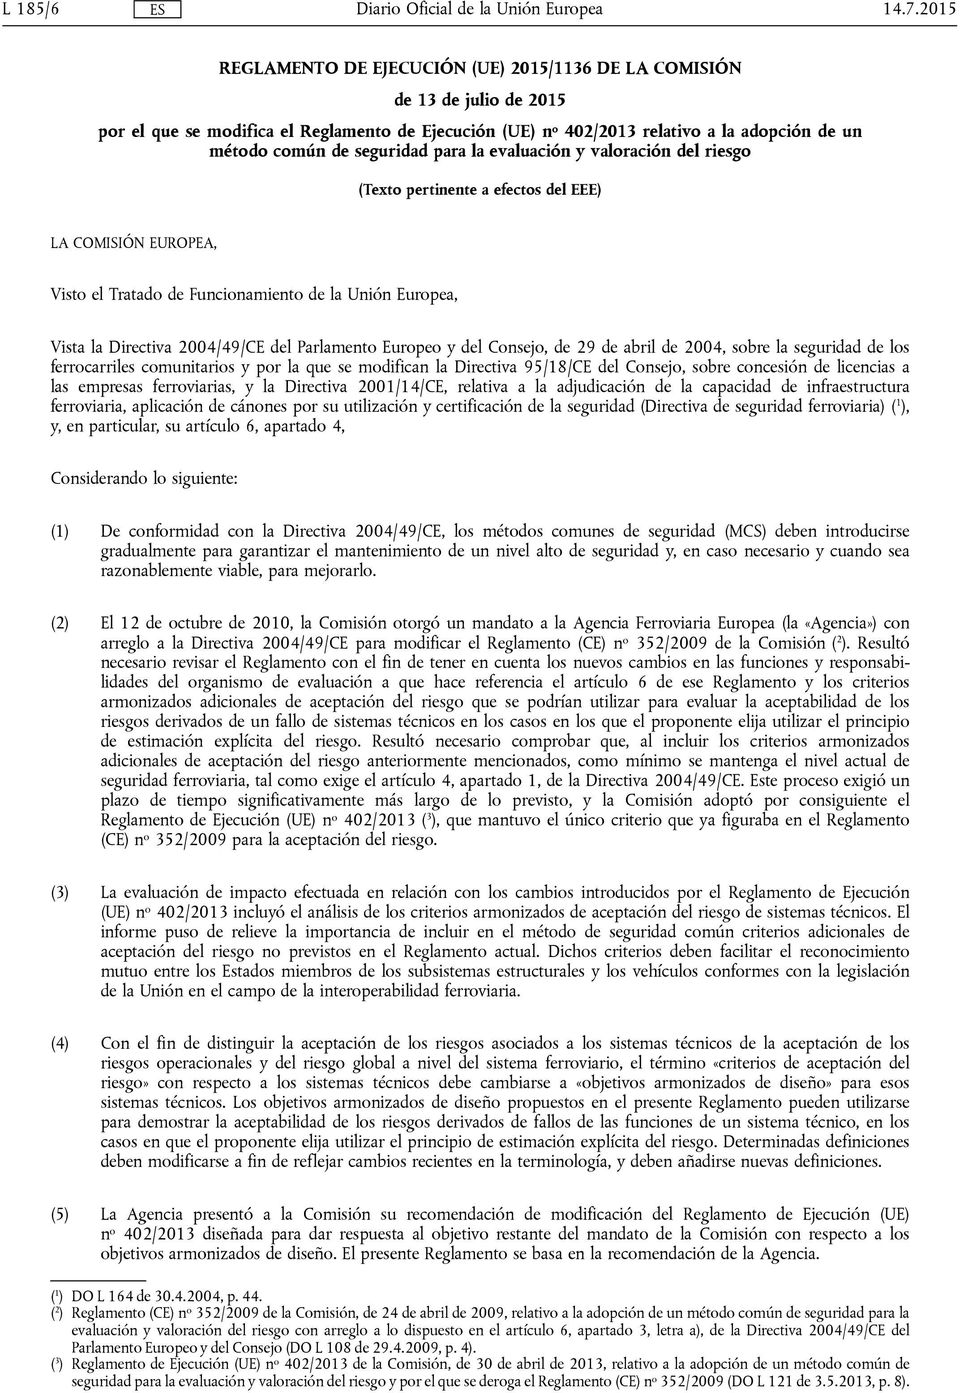 del Parlamento Europeo y del Consejo, de 29 de abril de 2004, sobre la seguridad de los ferrocarriles comunitarios y por la que se modifican la Directiva 95/18/CE del Consejo, sobre concesión de